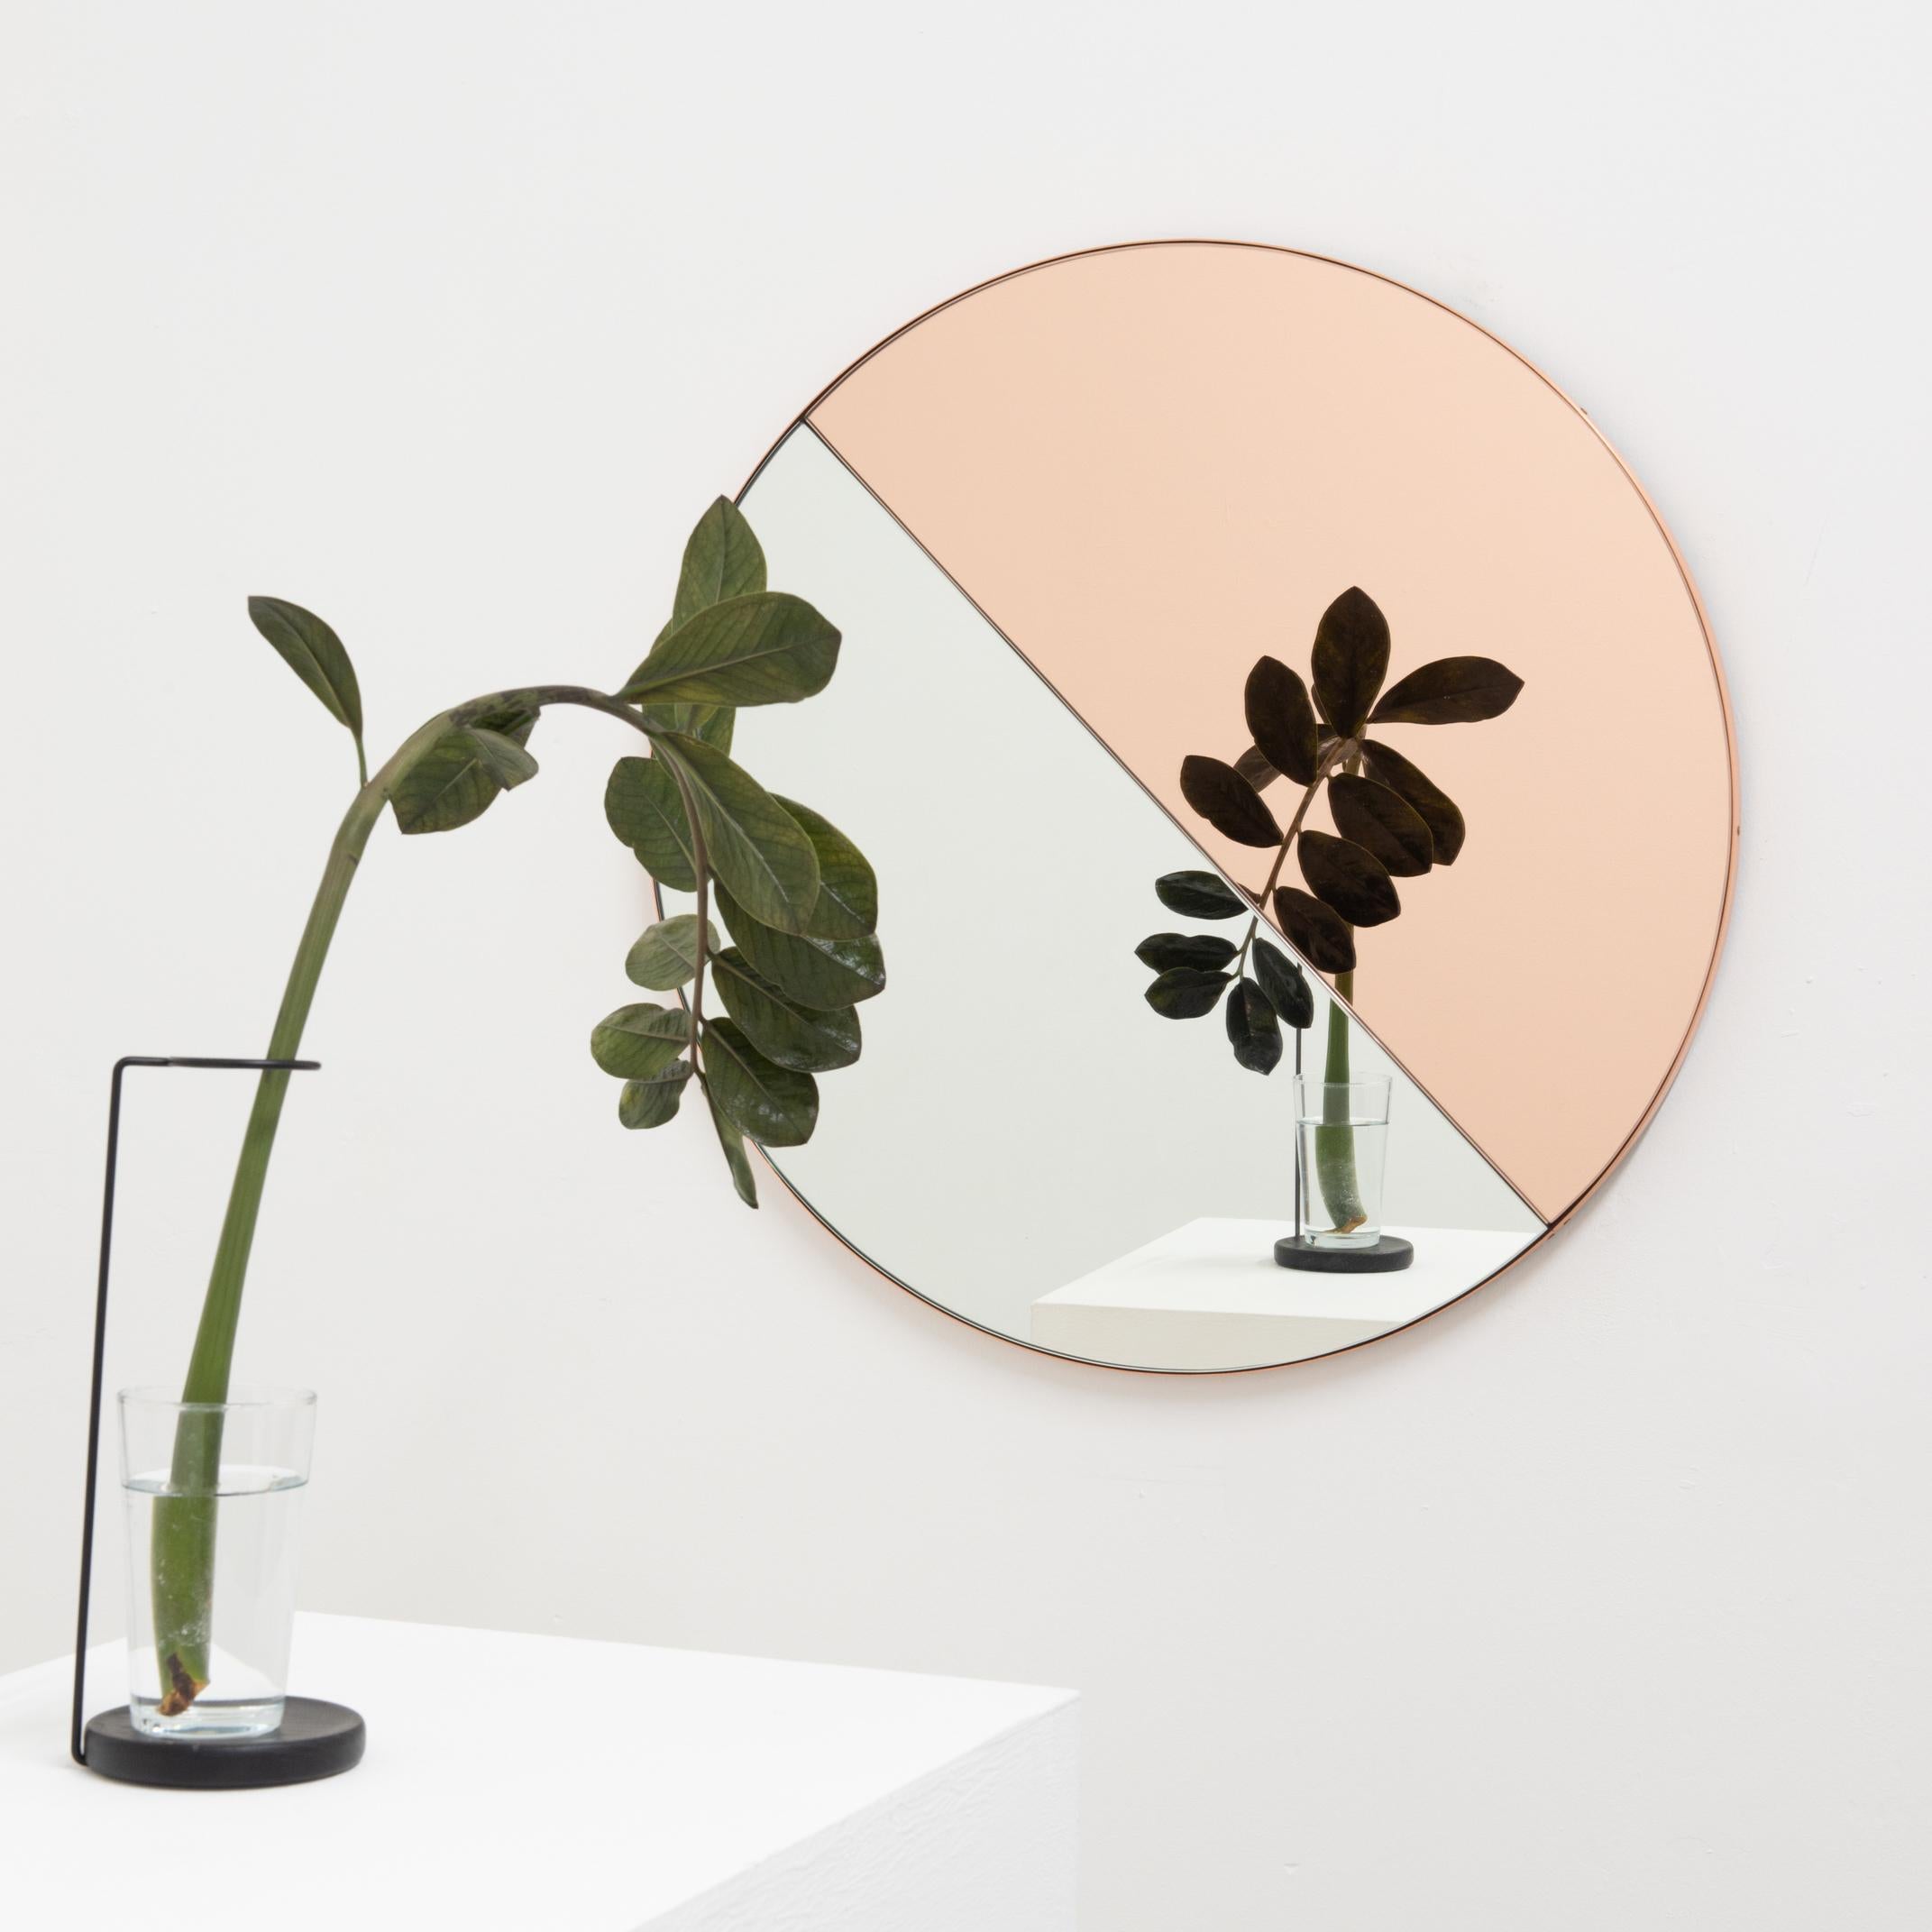 Miroir Orbis Dualis contemporain teinté mixte (argent et or rose / pêche) avec un cadre chic en cuivre. Conçu et fabriqué à la main à Londres, au Royaume-Uni.

Tous les miroirs sont équipés d'un ingénieux système de tasseaux à la française (lattes